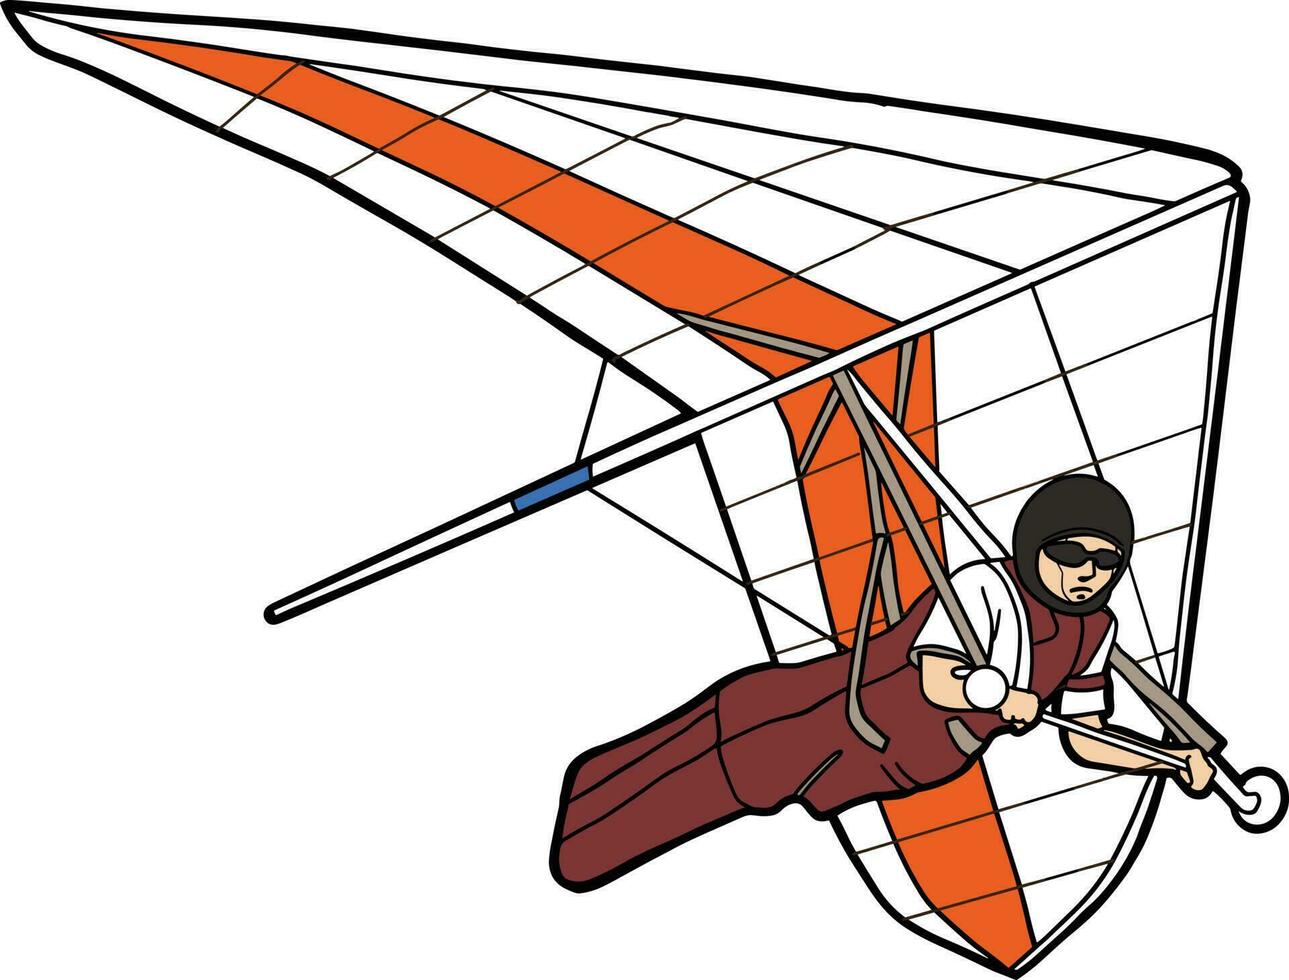 hängen Segelflugzeug extrem Sport fliegend vektor